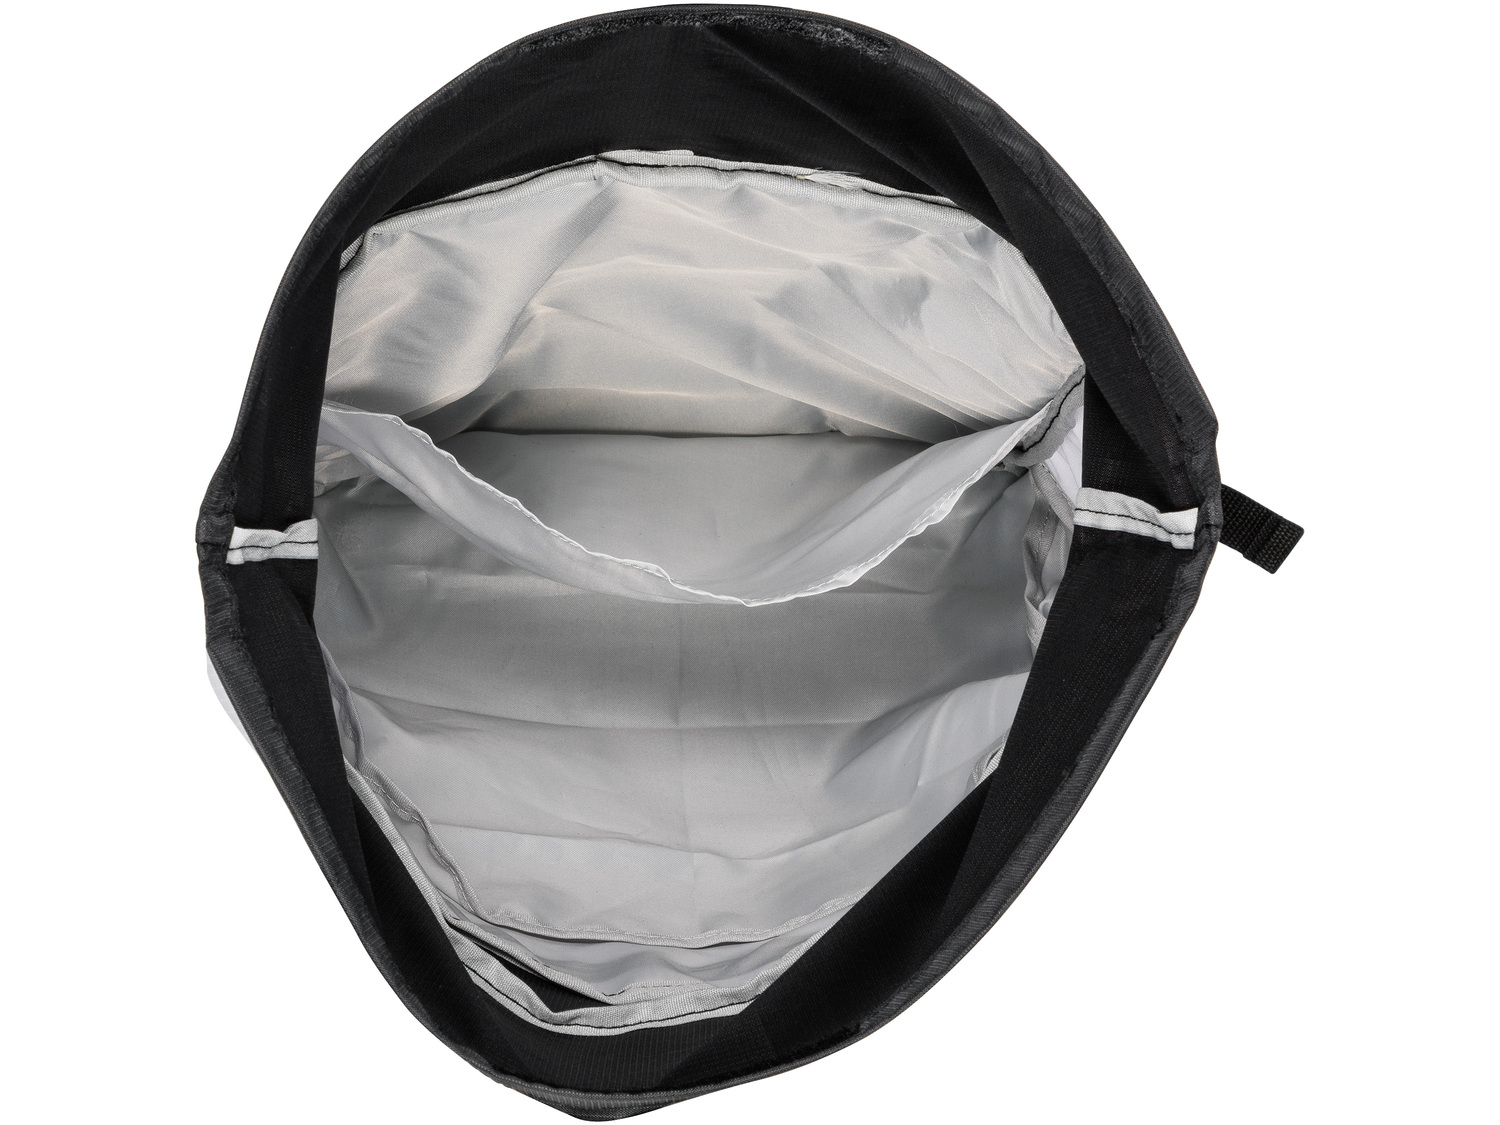 Plecak sportowy Crivit, cena 29,99 PLN 
- plecak: ok. 52 x 29 x 16 cm
- pojemny ...